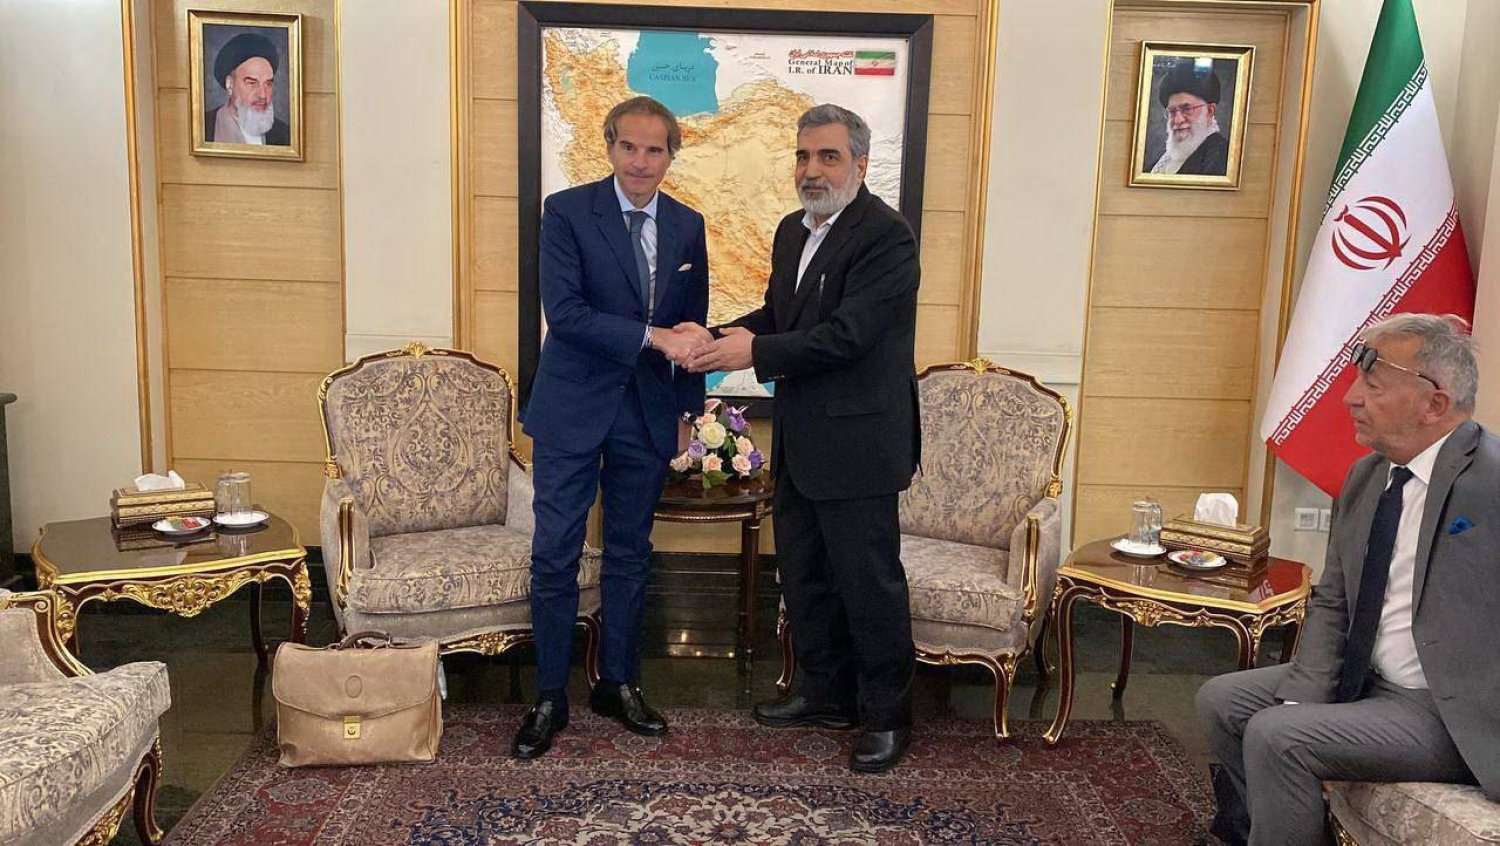 بهروز كمالوندي نائب رئيس «الذرية الإيرانية» يستقبل مدير الوكالة الدولية للطاقة الذرية رافائيل غروسي والوفد المرافق له (إیرنا)